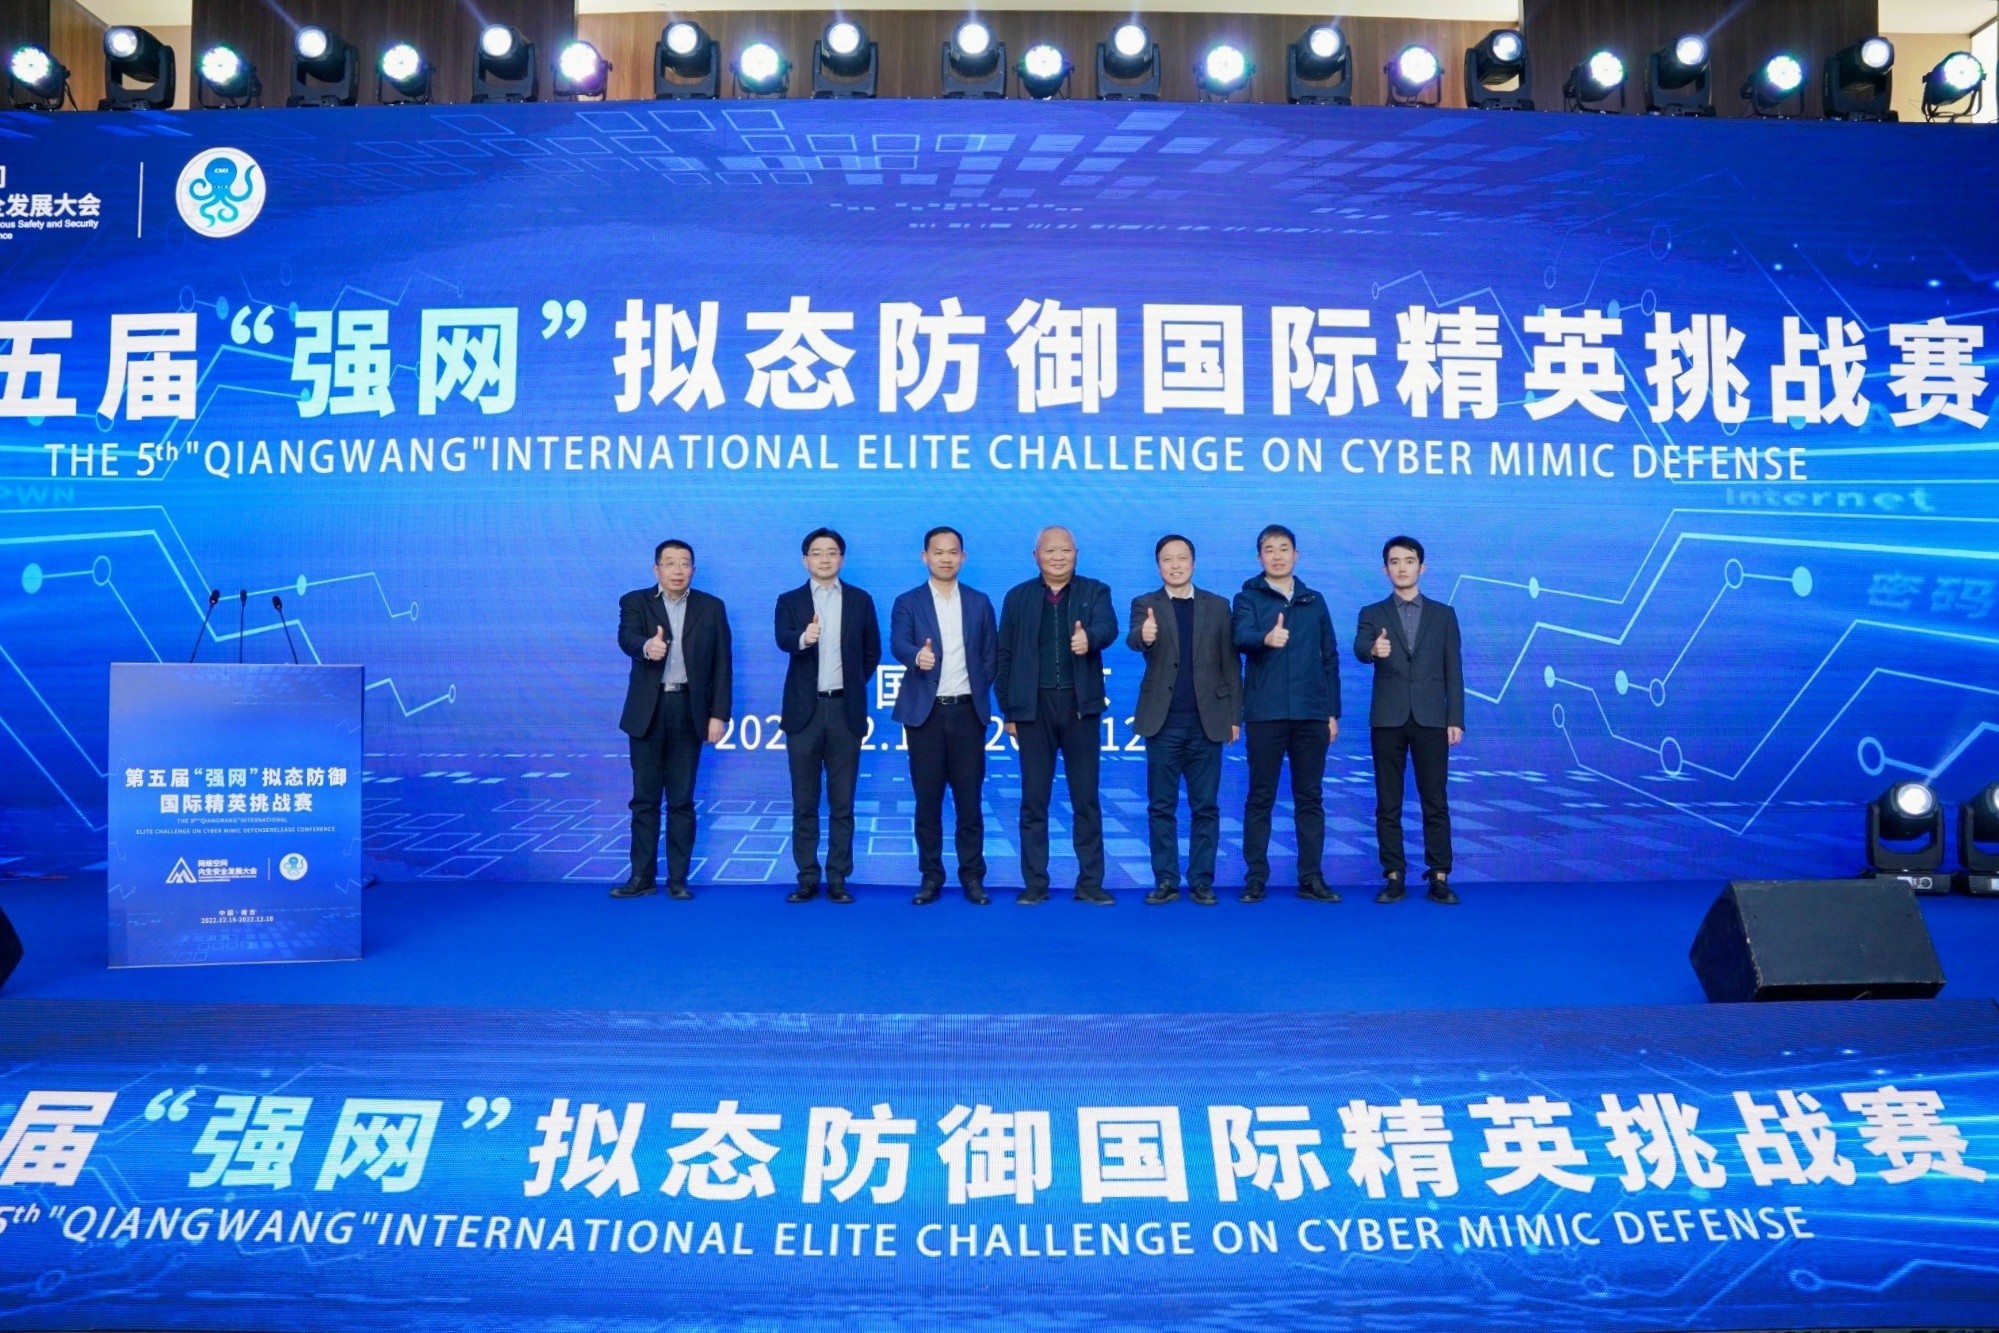 第五届“强网”拟态防御国际精英挑战赛在南京举行